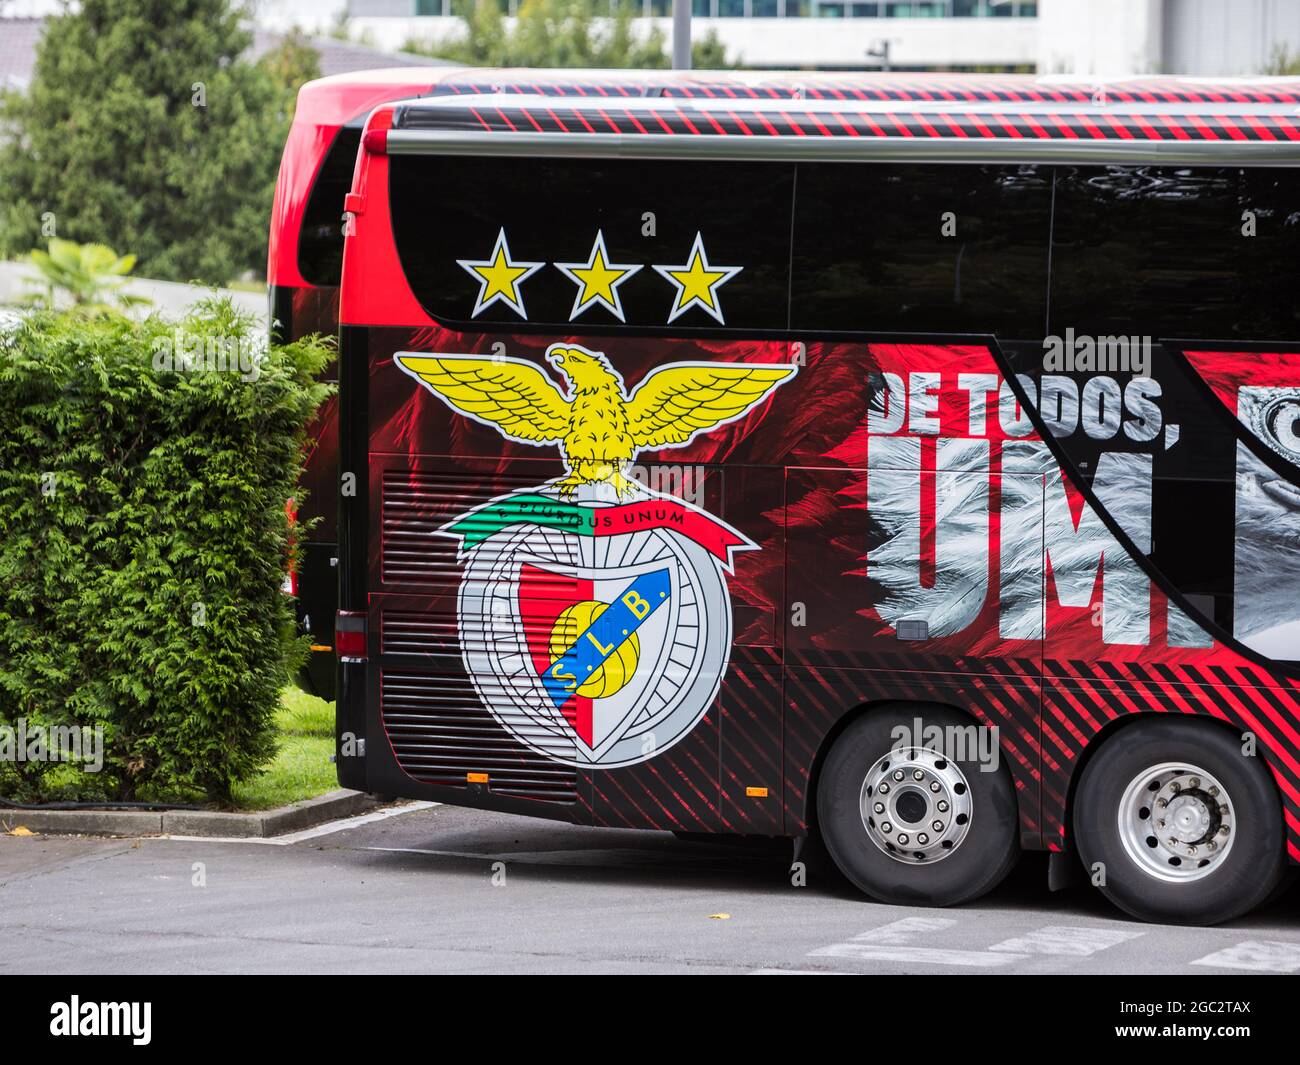 Braga, Portugal - 06. August 2021: SL Benfica Bus vor dem Melia Hotel geparkt. Rückseite des Busses mit einer Nahaufnahme des SL Benfica-Emblems Stockfoto